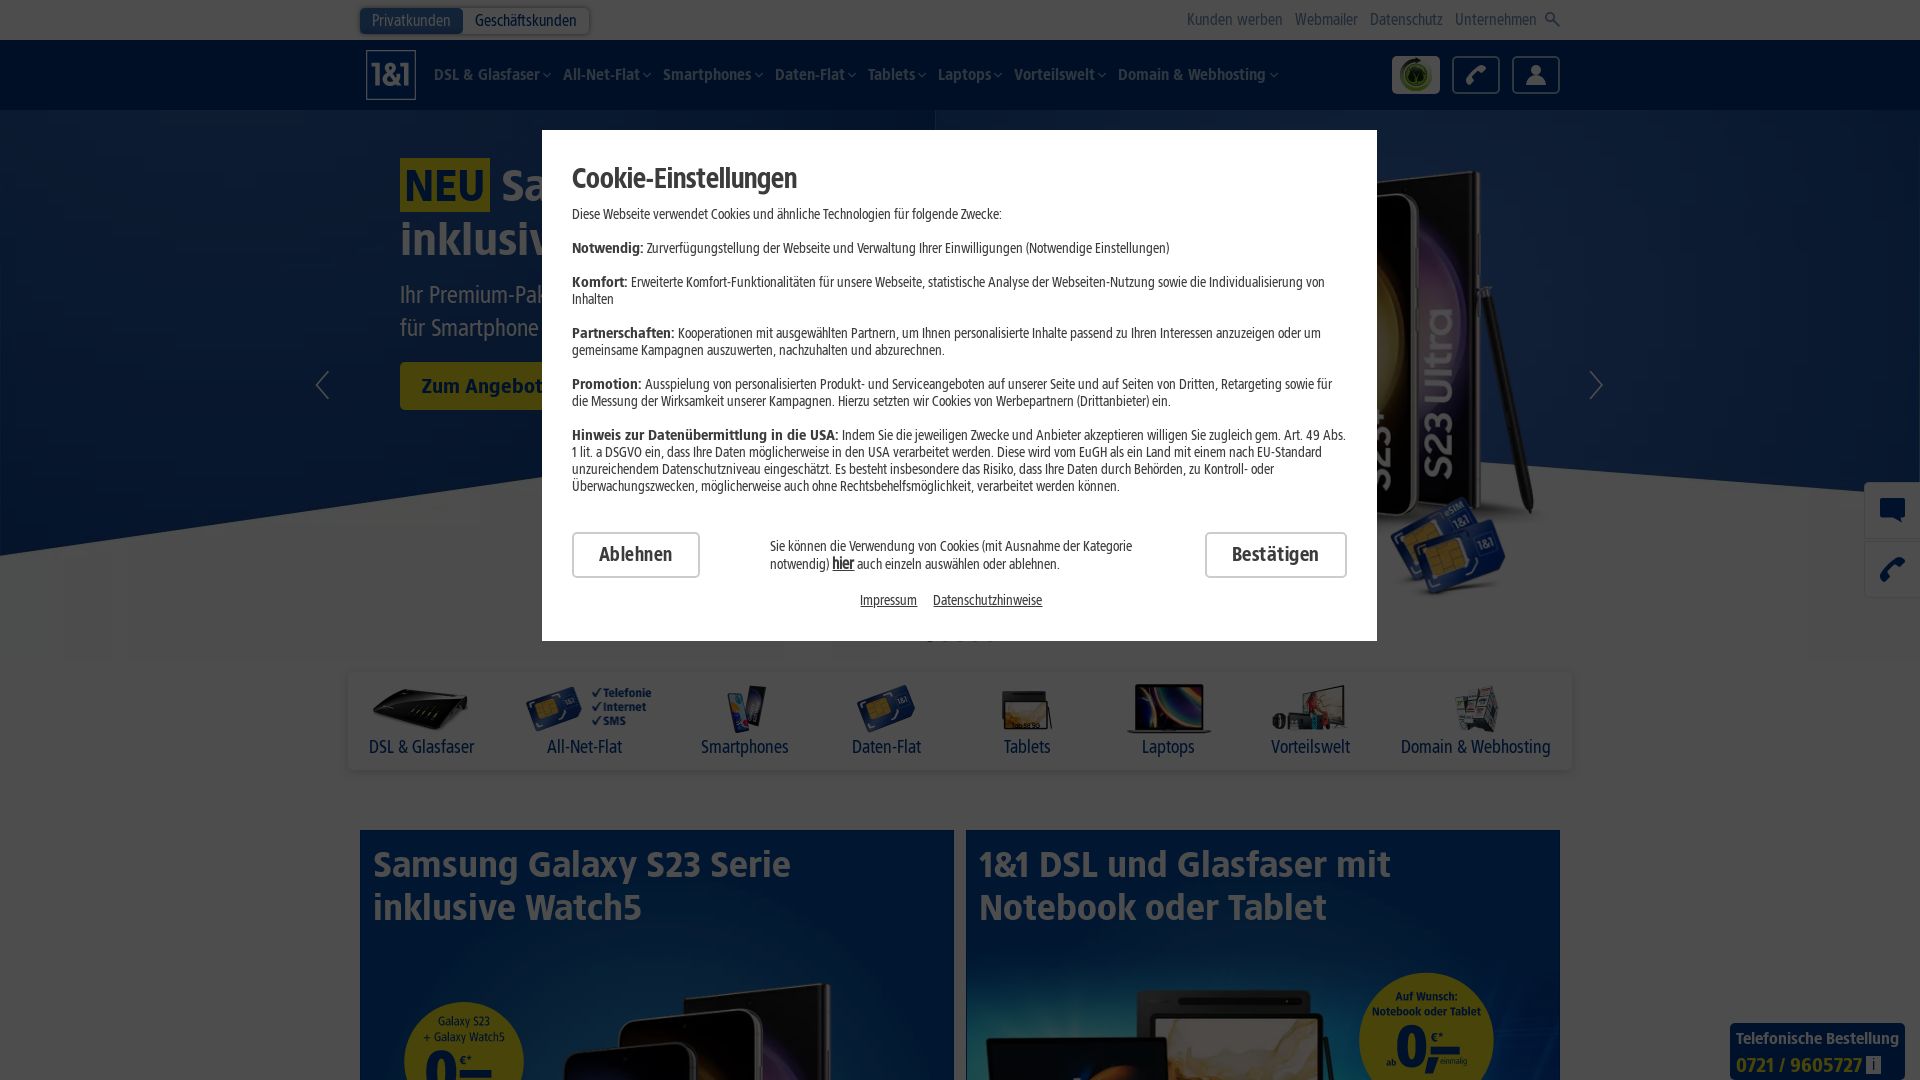 Website status 1und1.de is   ONLINE